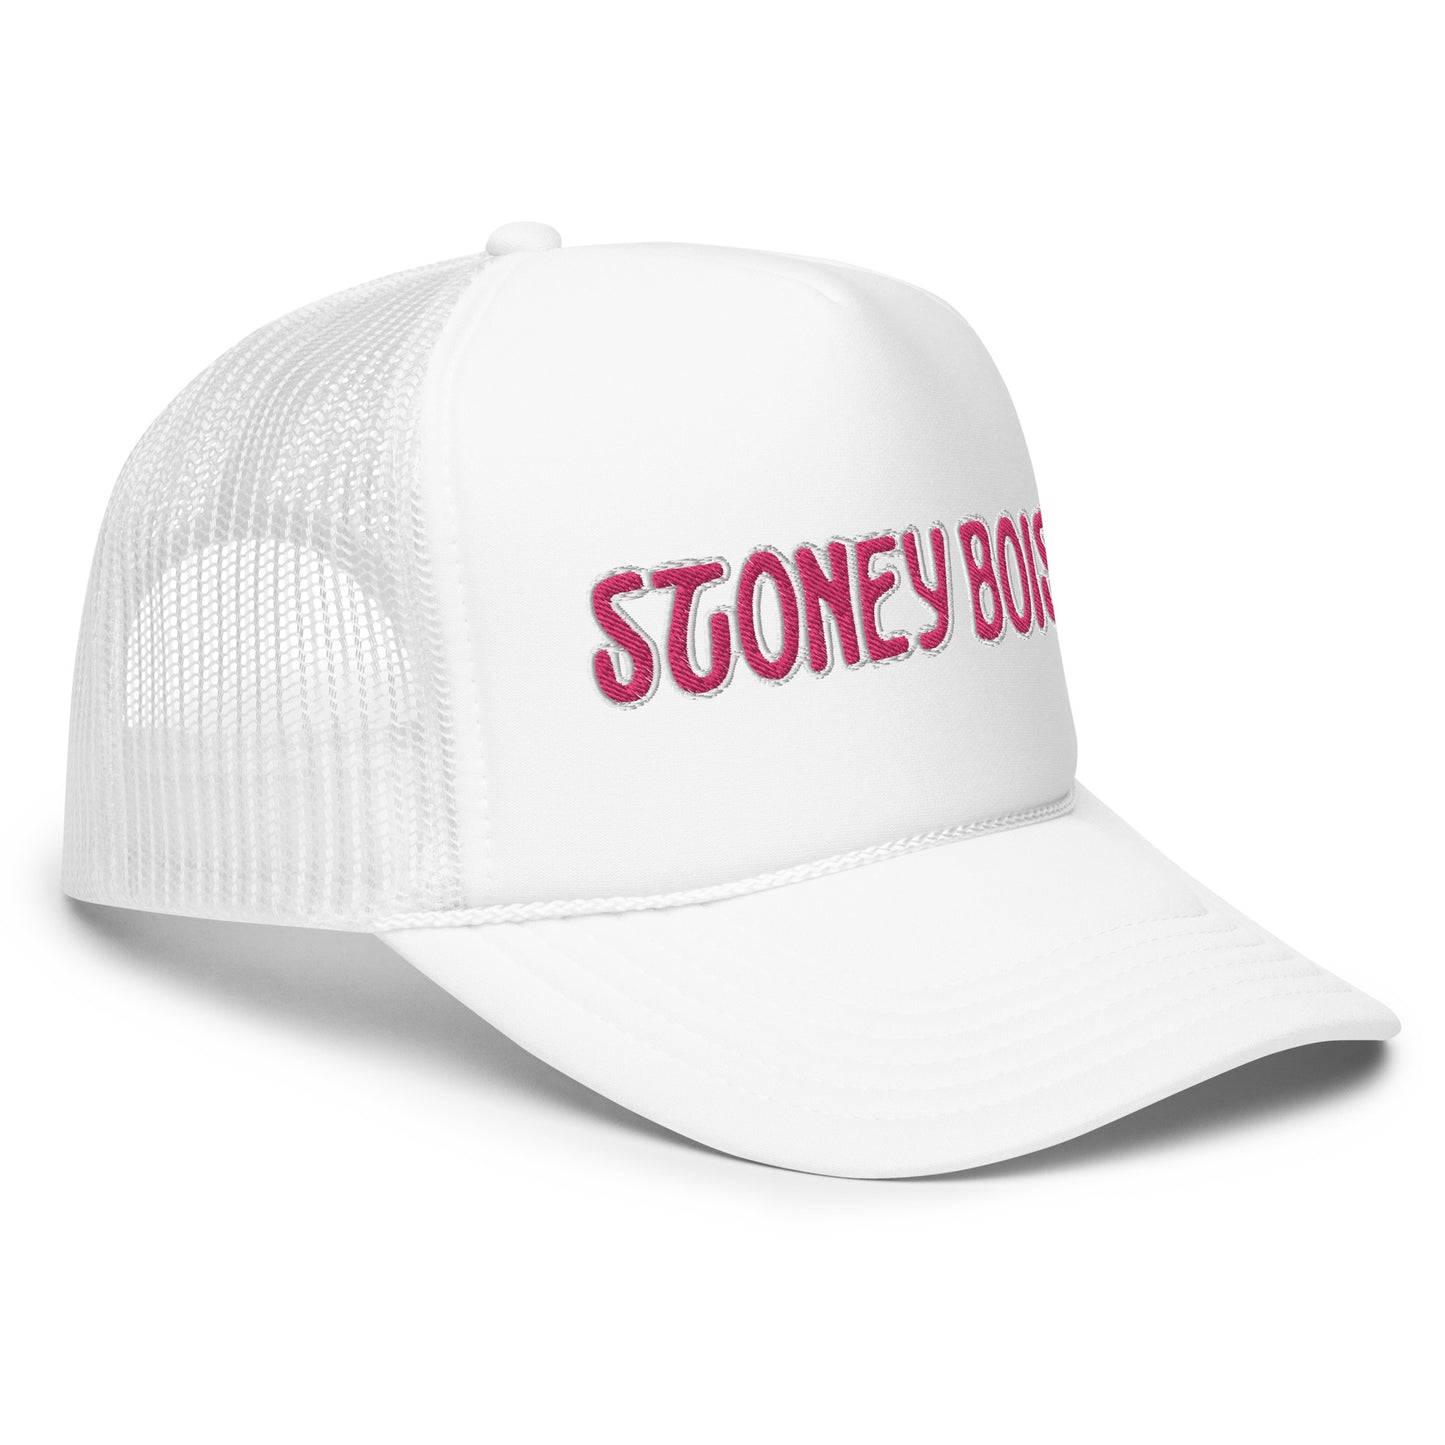 StoneyBois™ Foam trucker hat